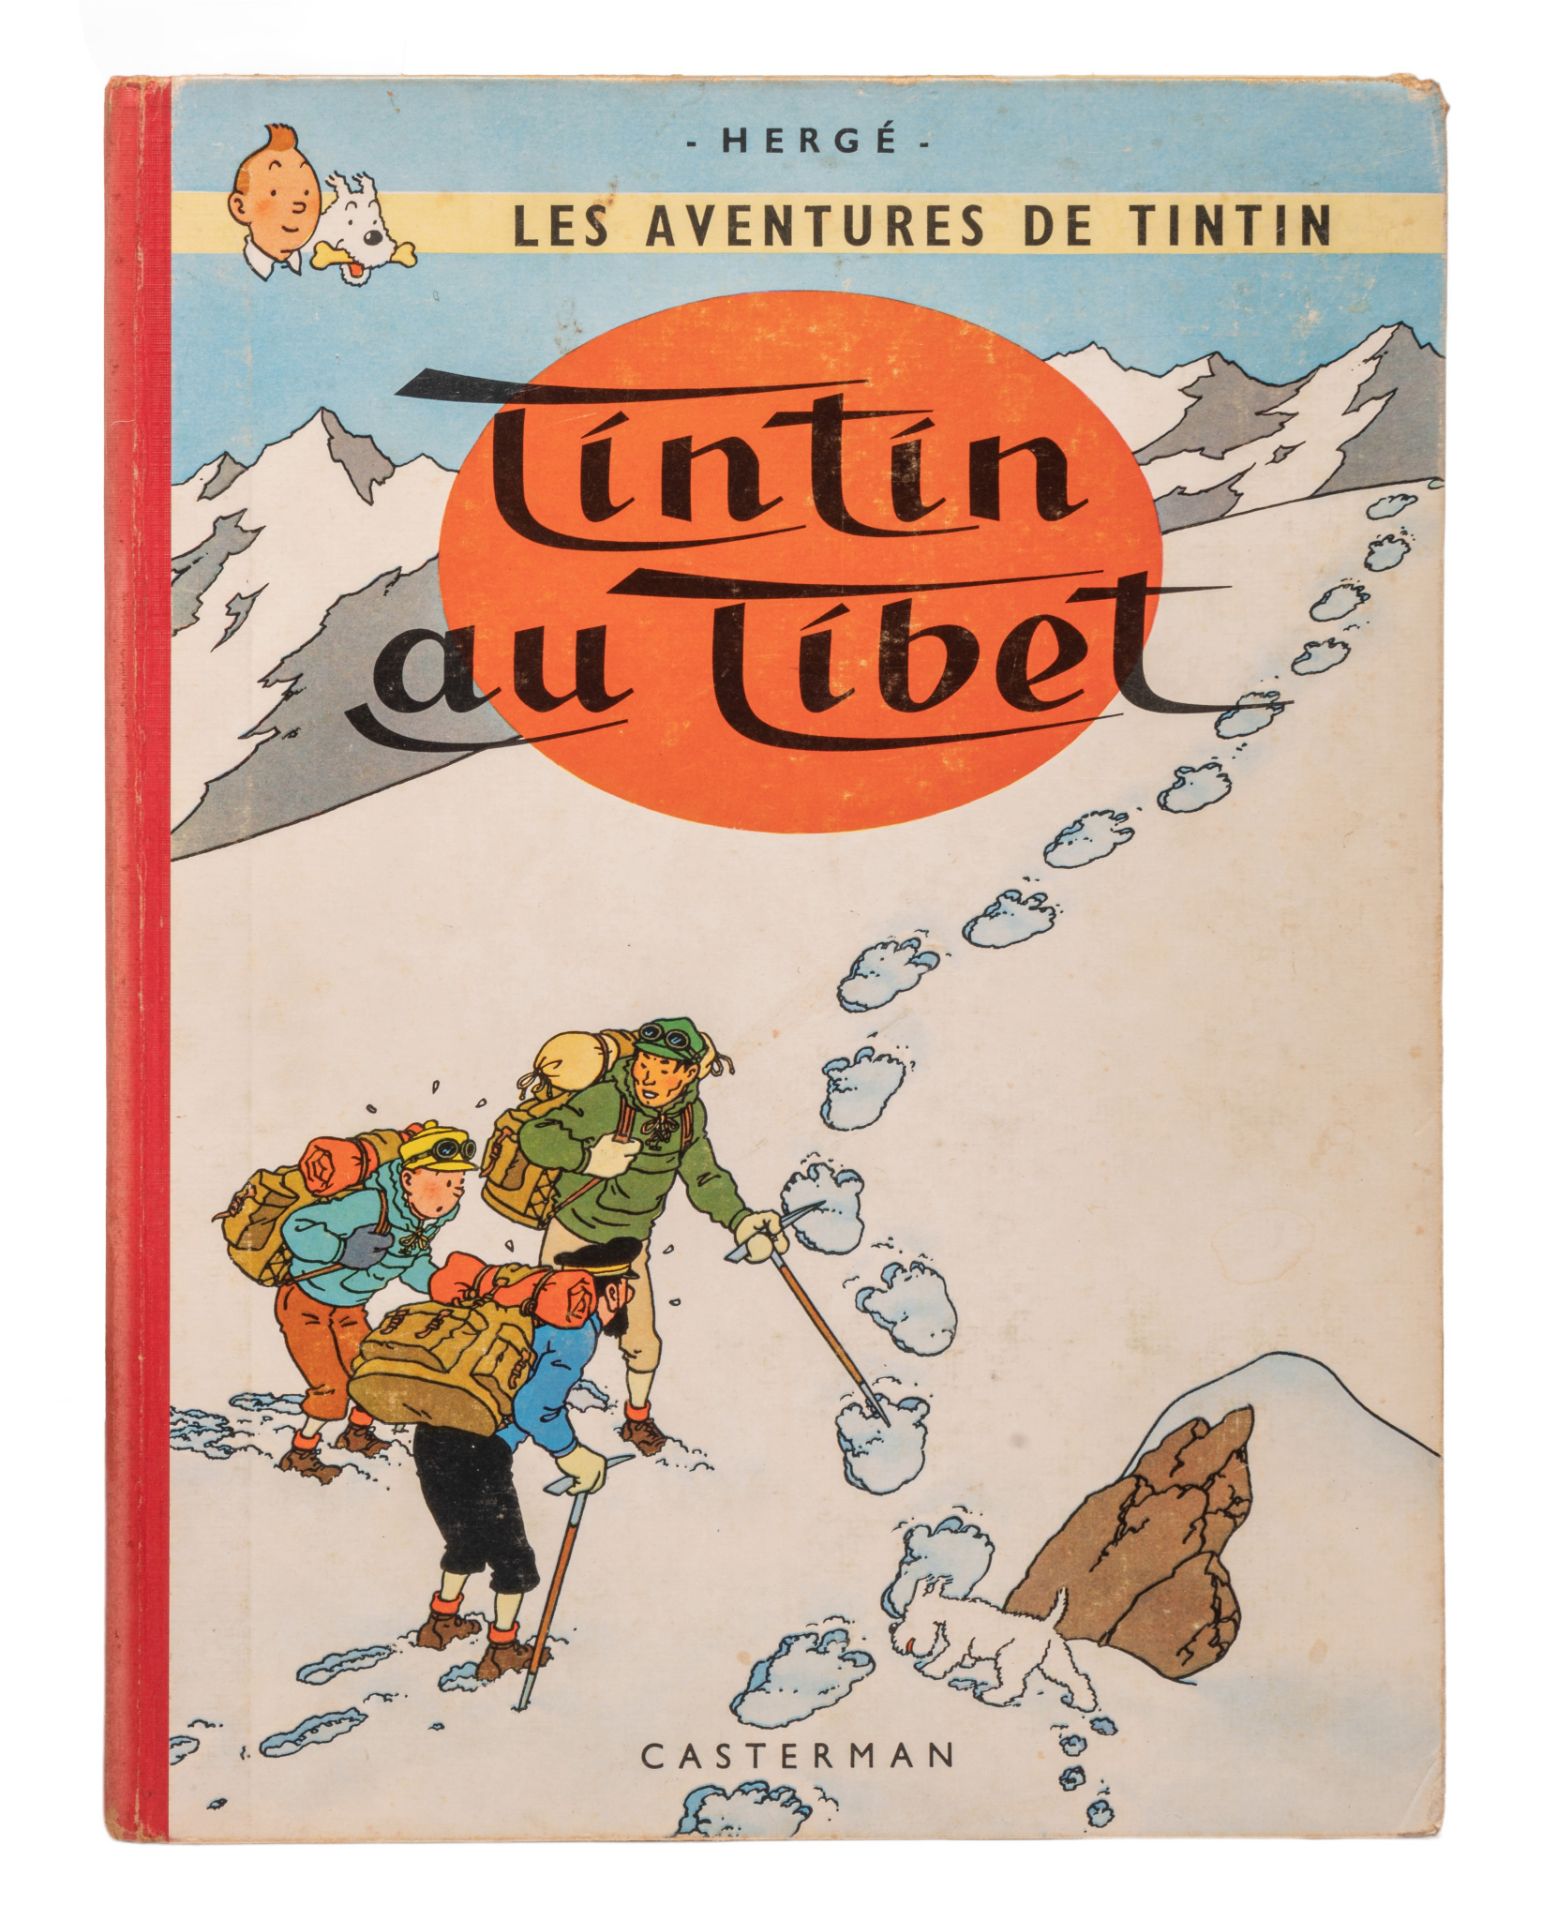 Herge (1907-1983), 'Les Aventures de Tintin, Tintin au Tibet', 1960 (B29)